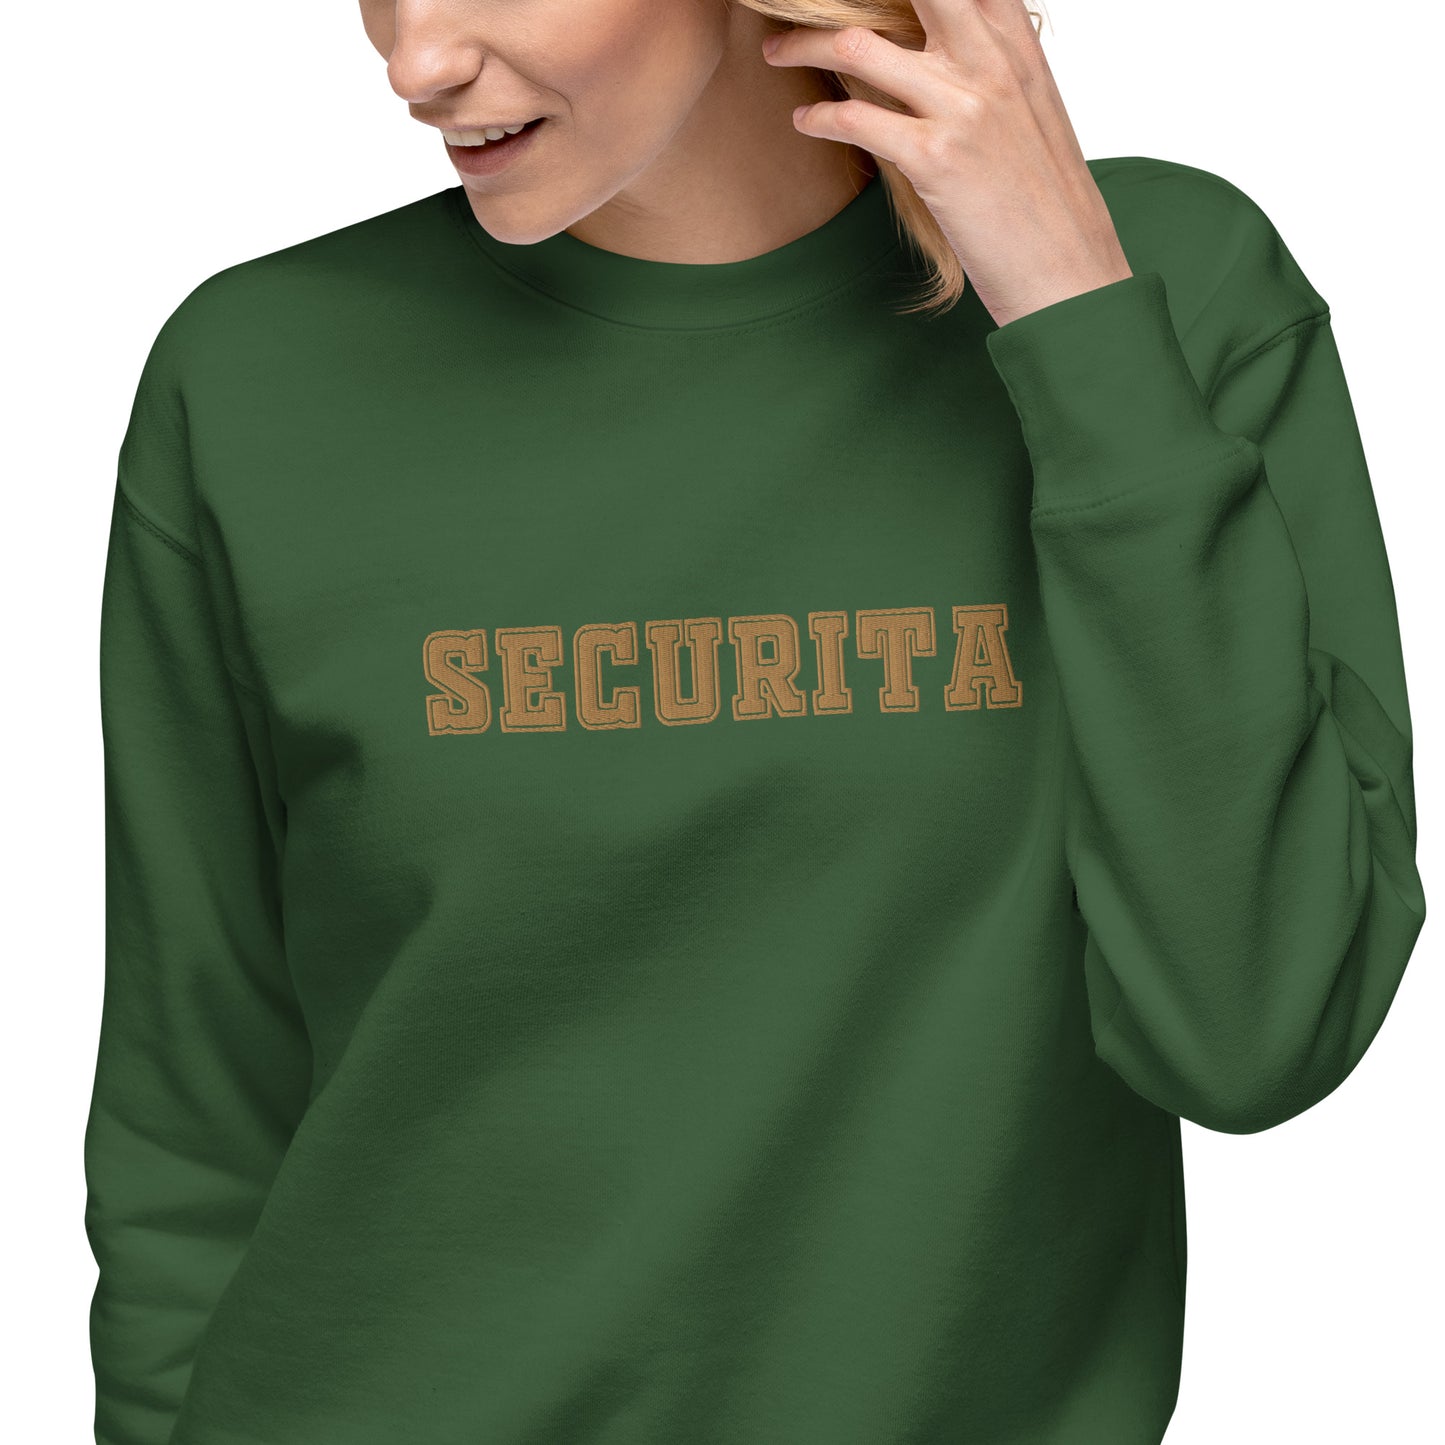 Sweatshirt premium Brodé Securita